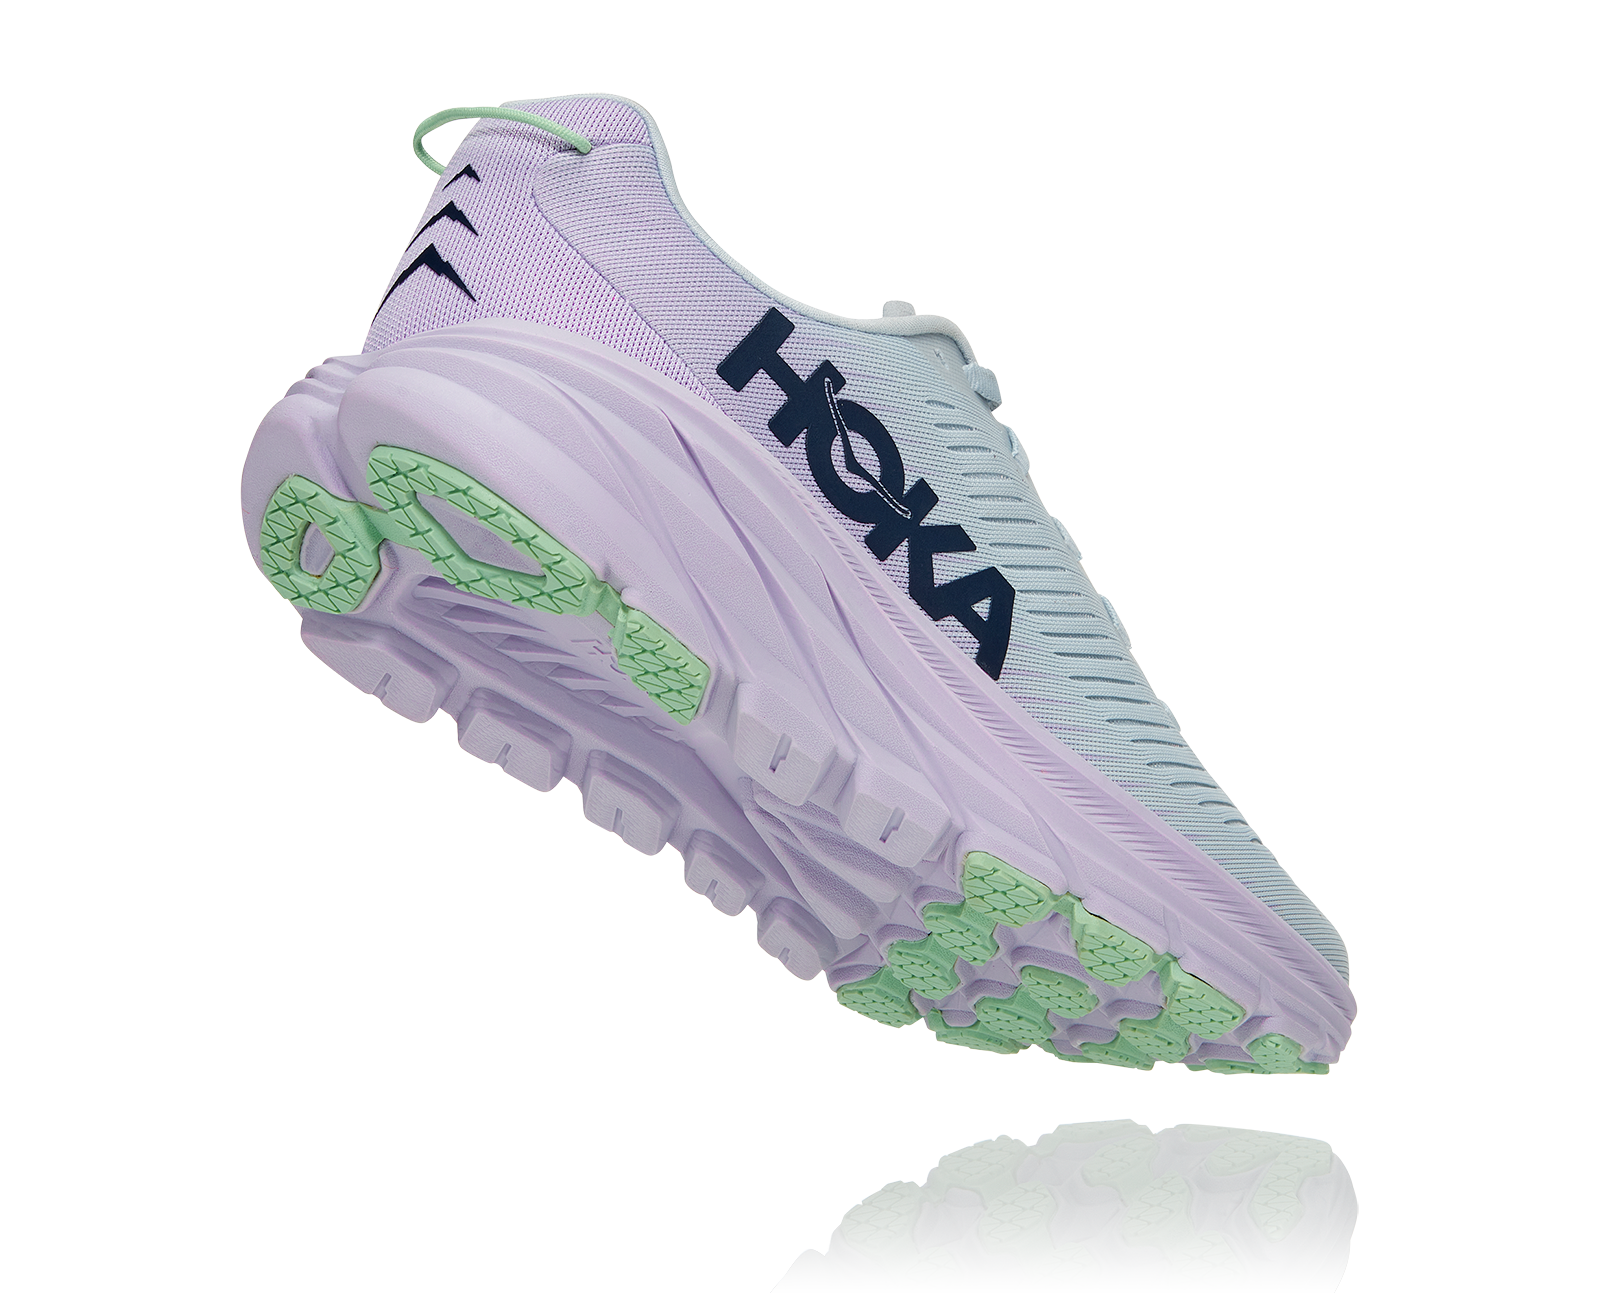 Hoka Women's Rincon 3 running shoe, wide fit, lightweight, racing shoe, road running shoe, light gray and lilac